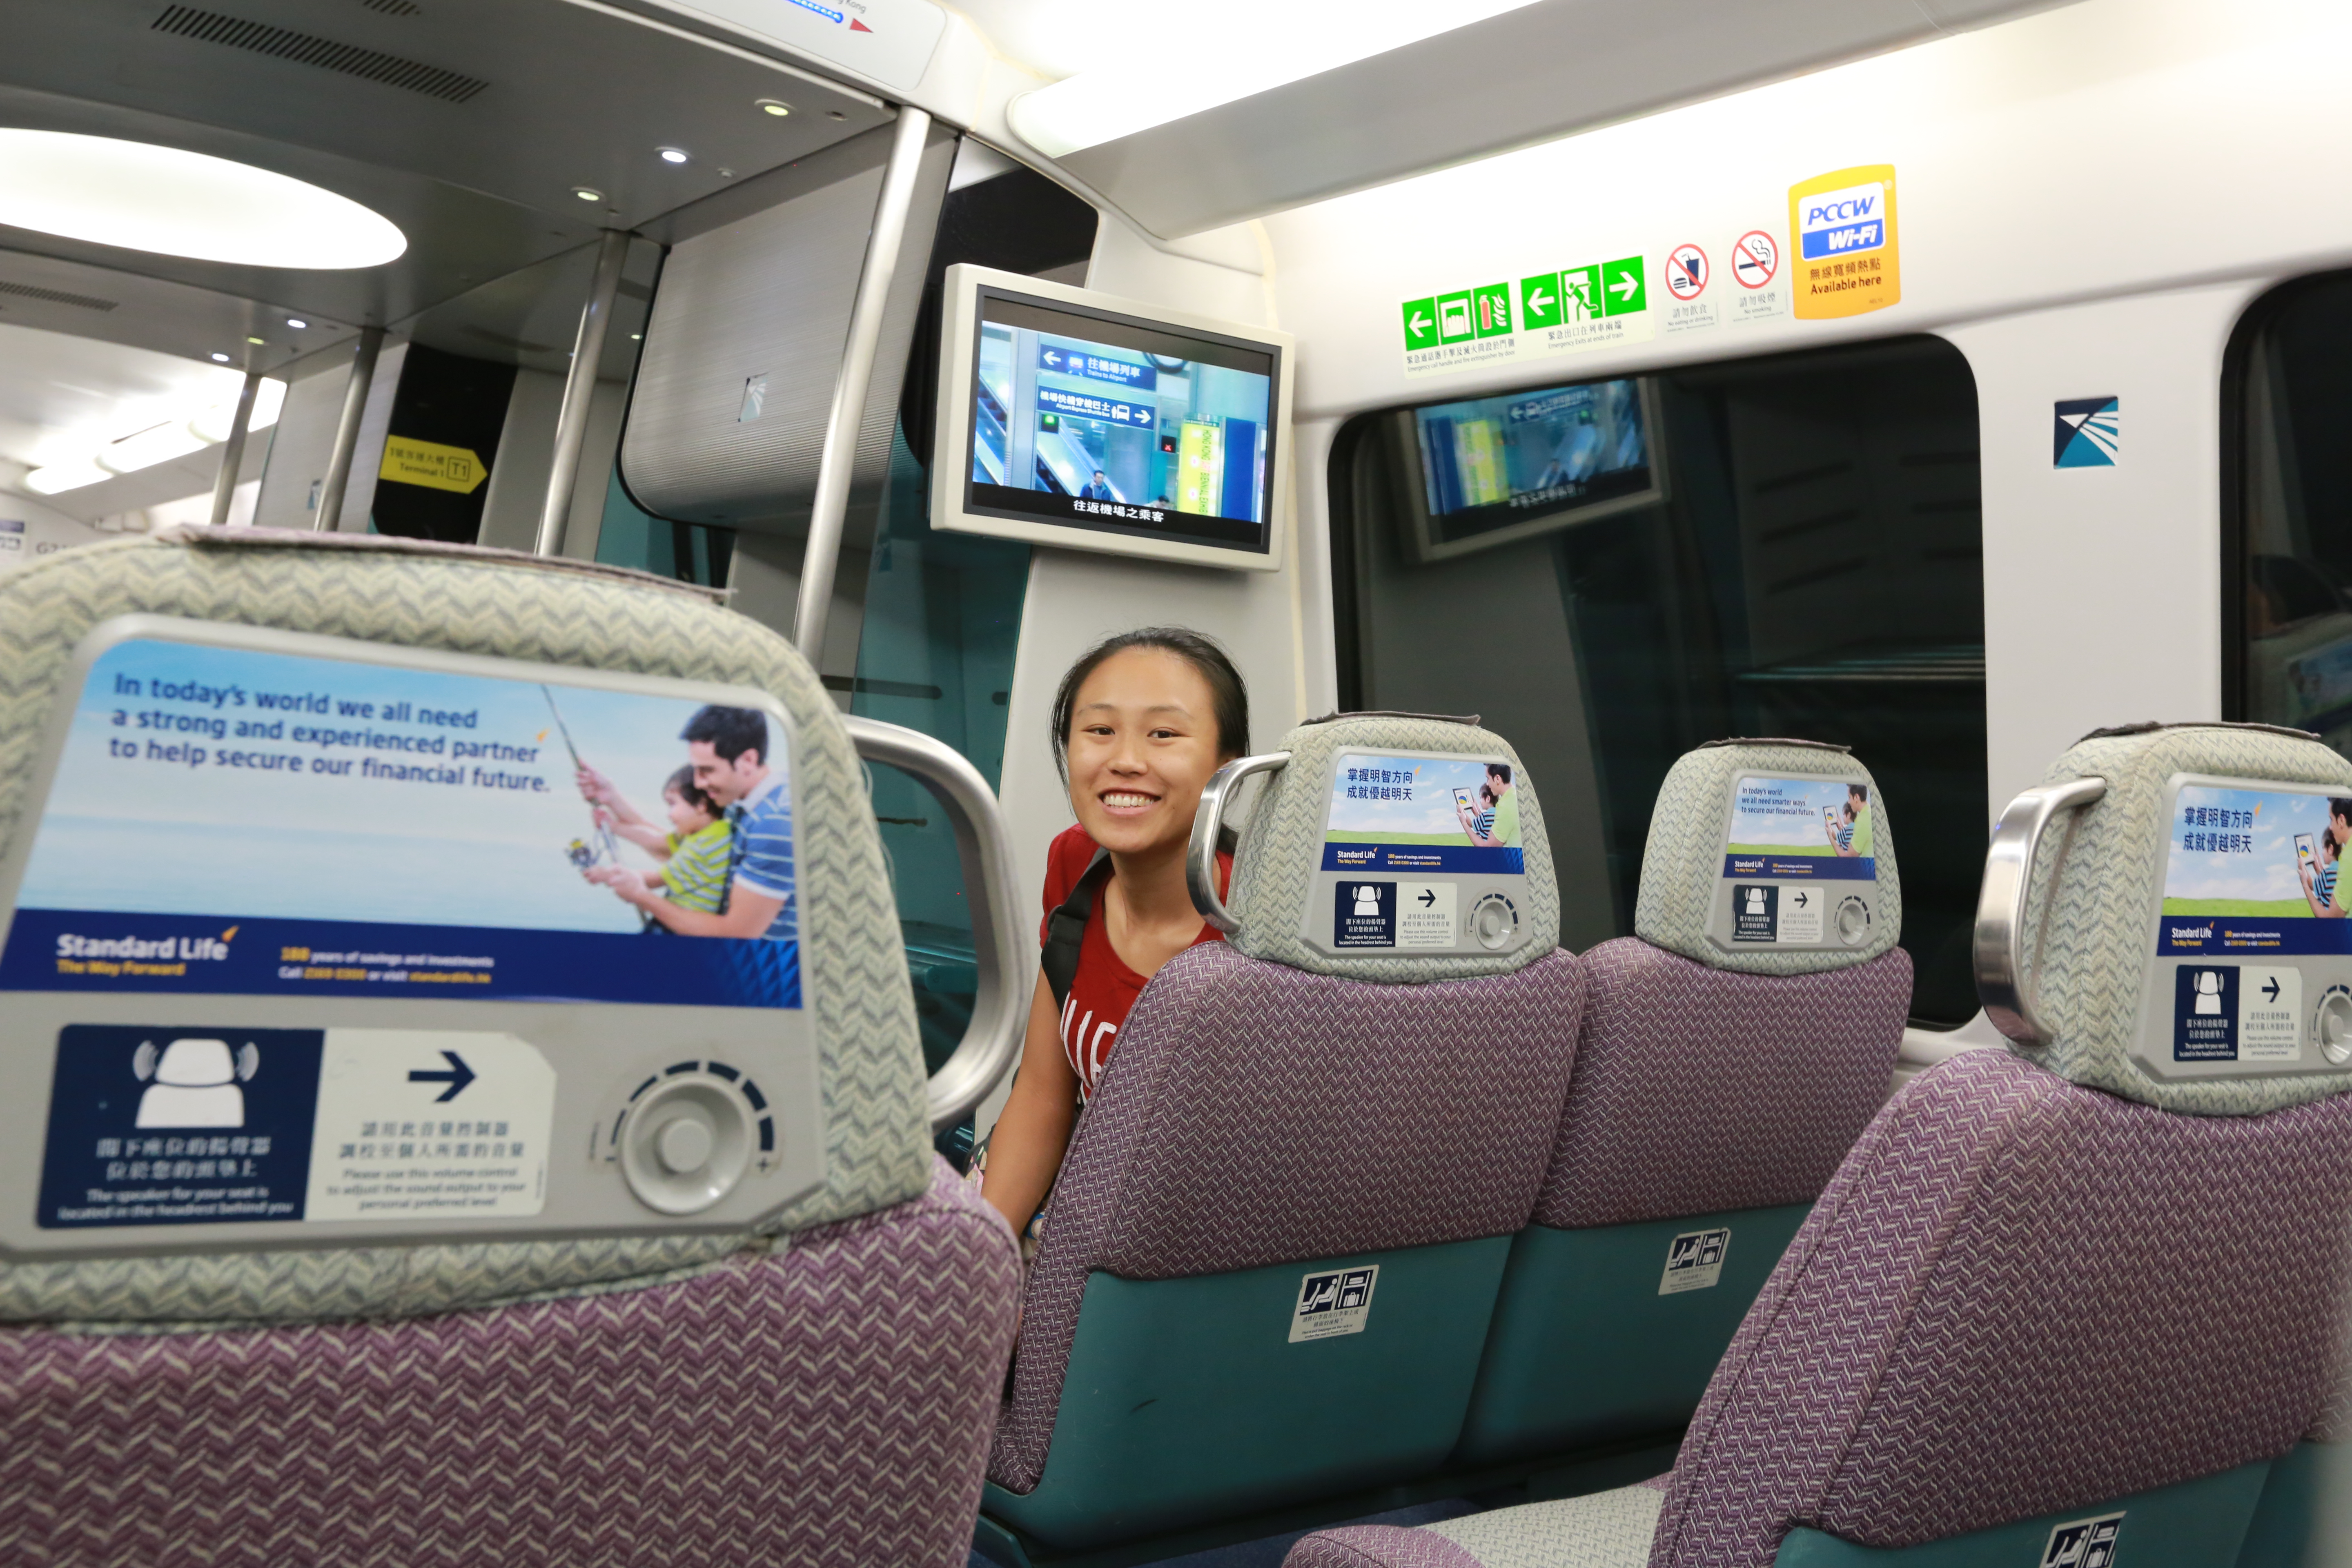 机场快线的环境也是相当好的,连接了各大地铁站以及酒店穿梭巴士,香港